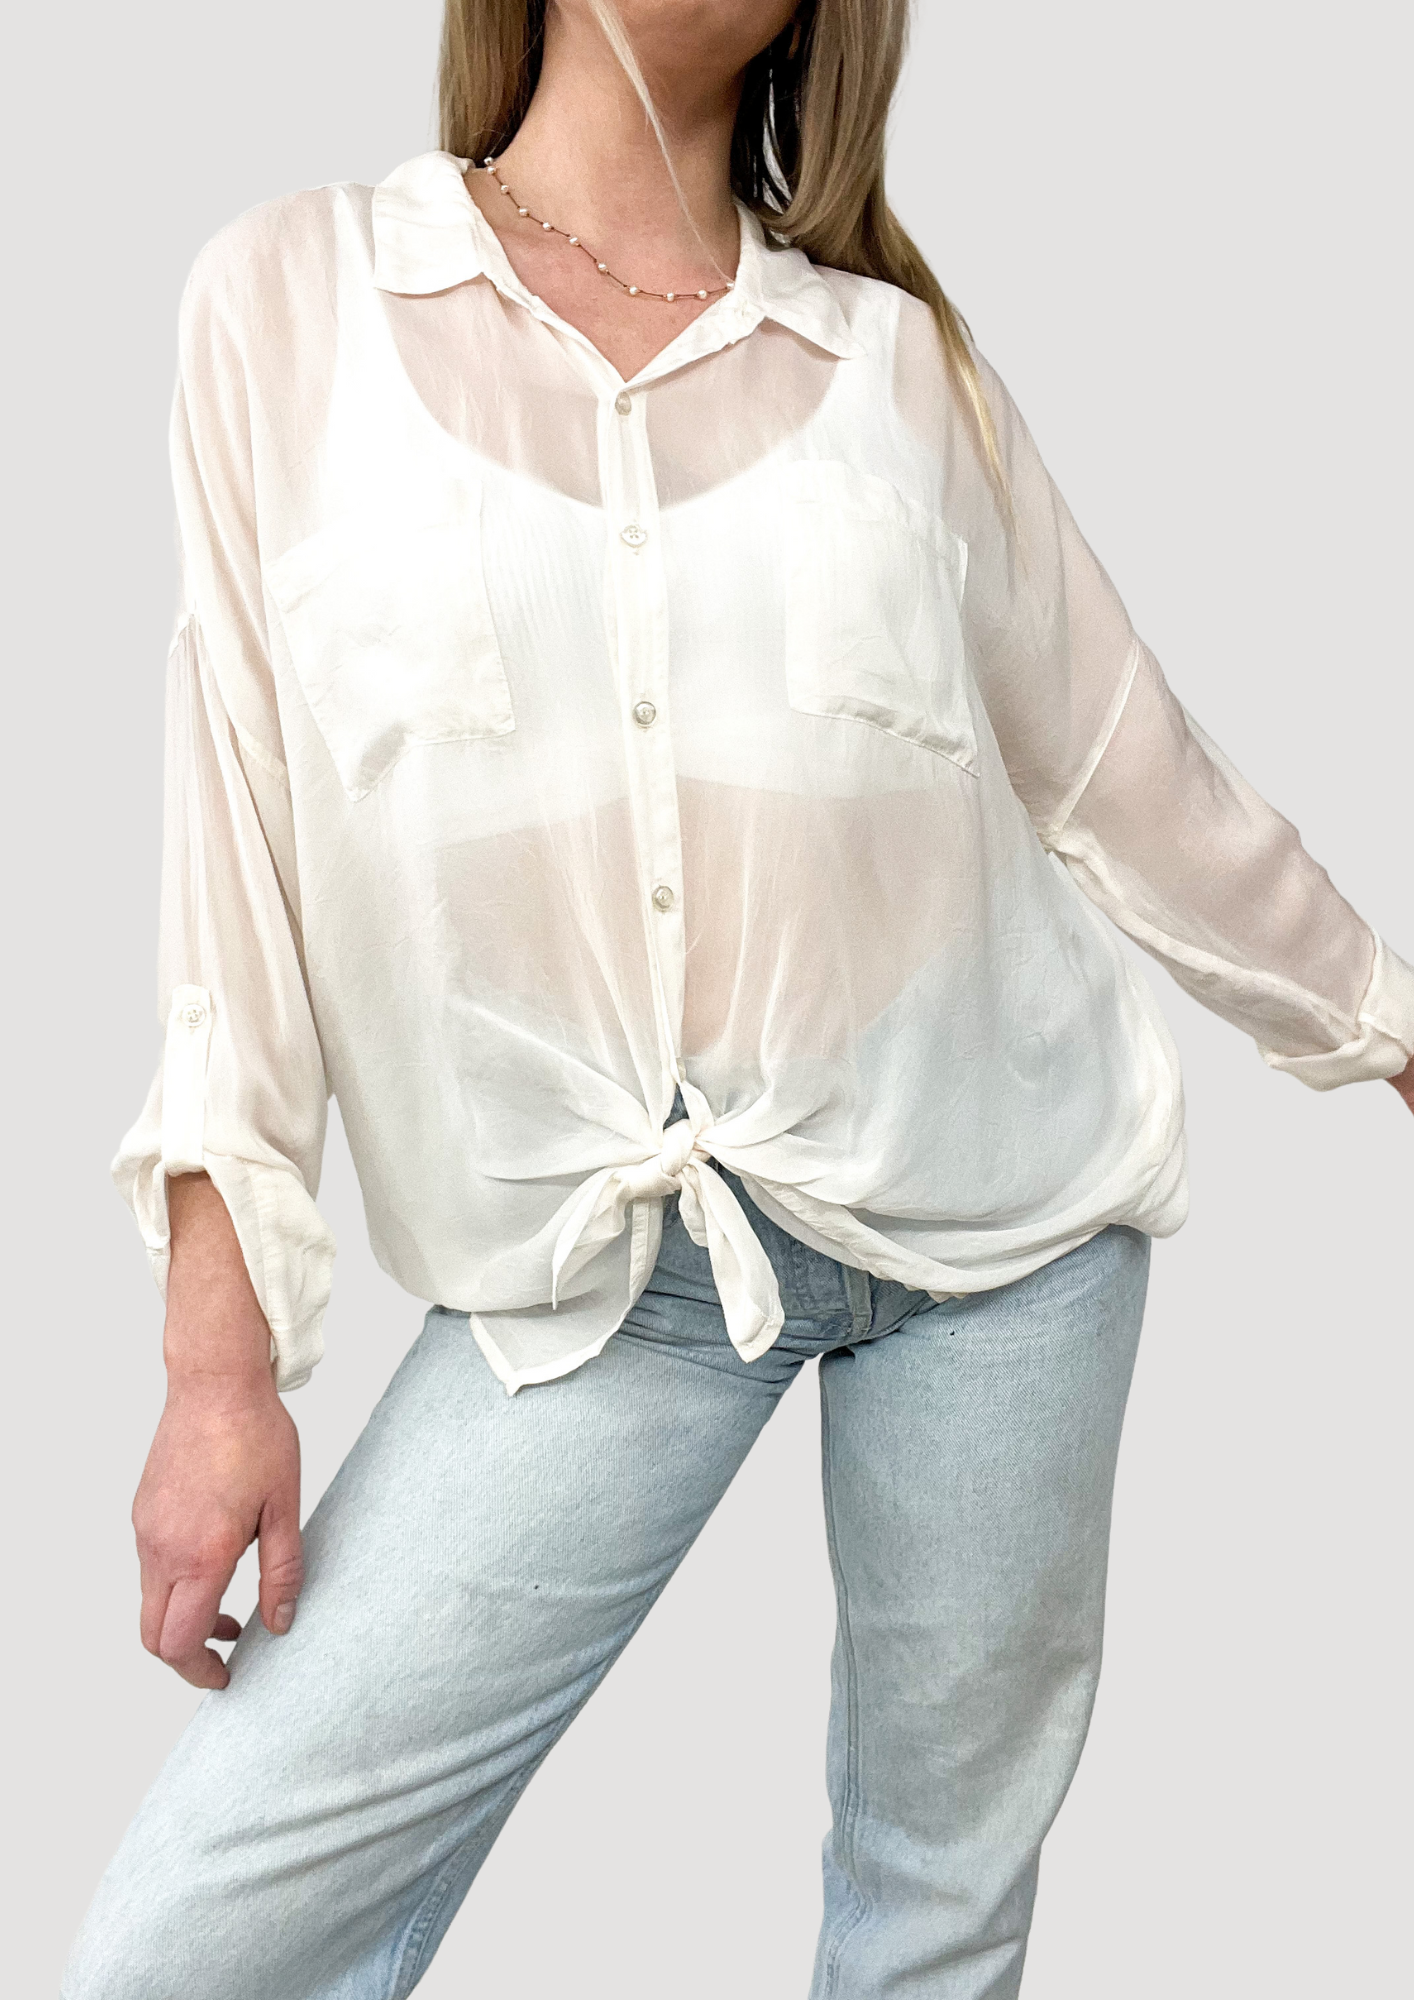 White sheer blouse